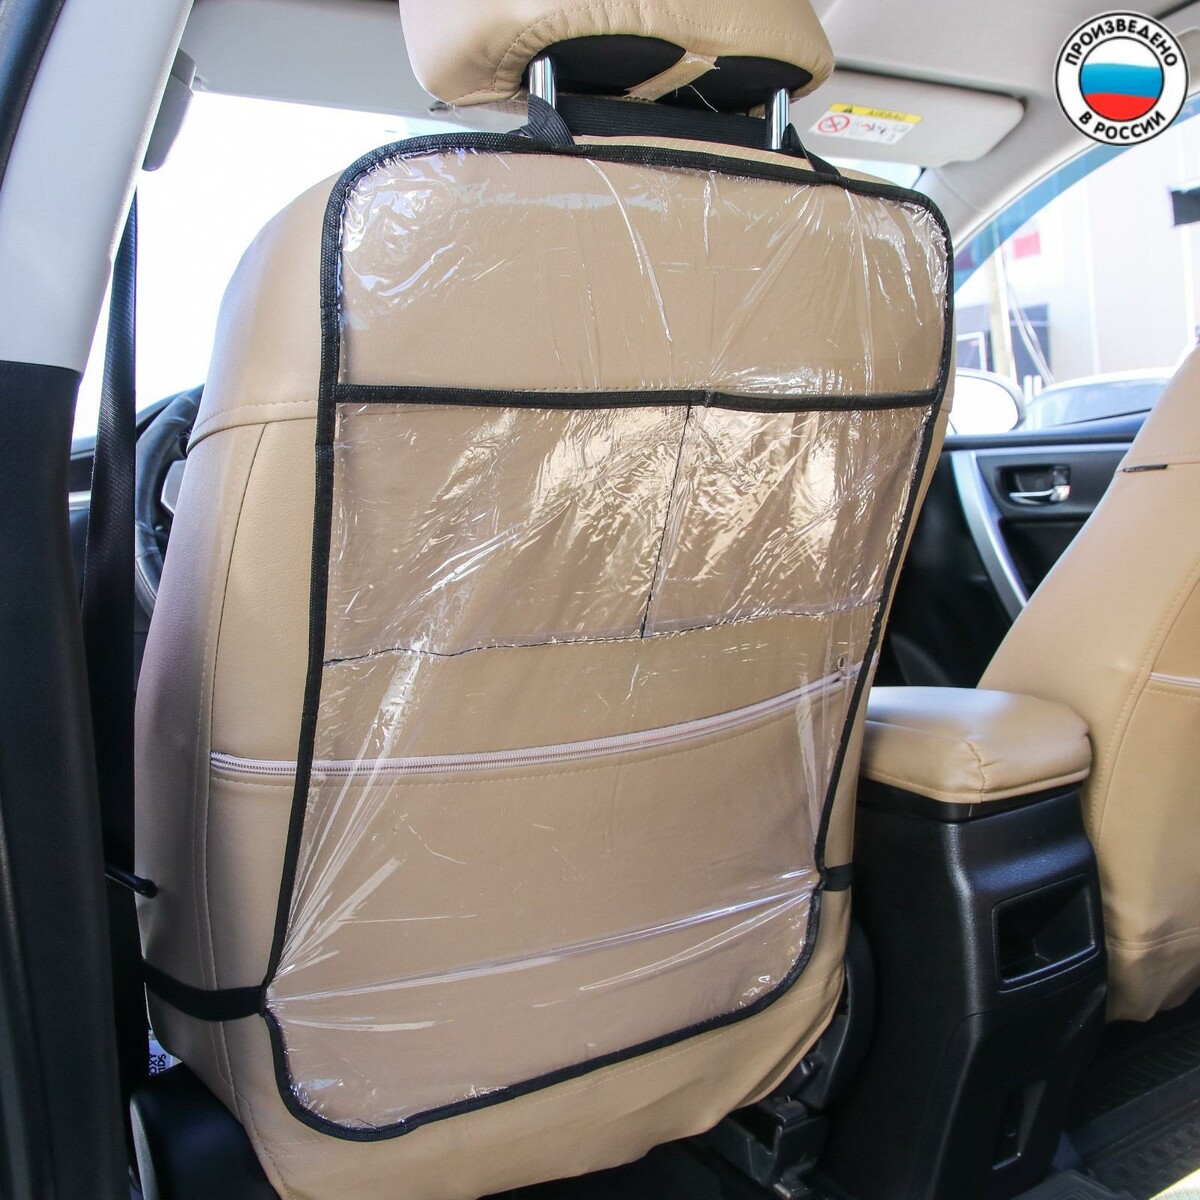 Защитная накидка на спинку сиденья автомобиля, 2 кармана, 605х400 мм, пвх аксессуар для автомобиля cybex